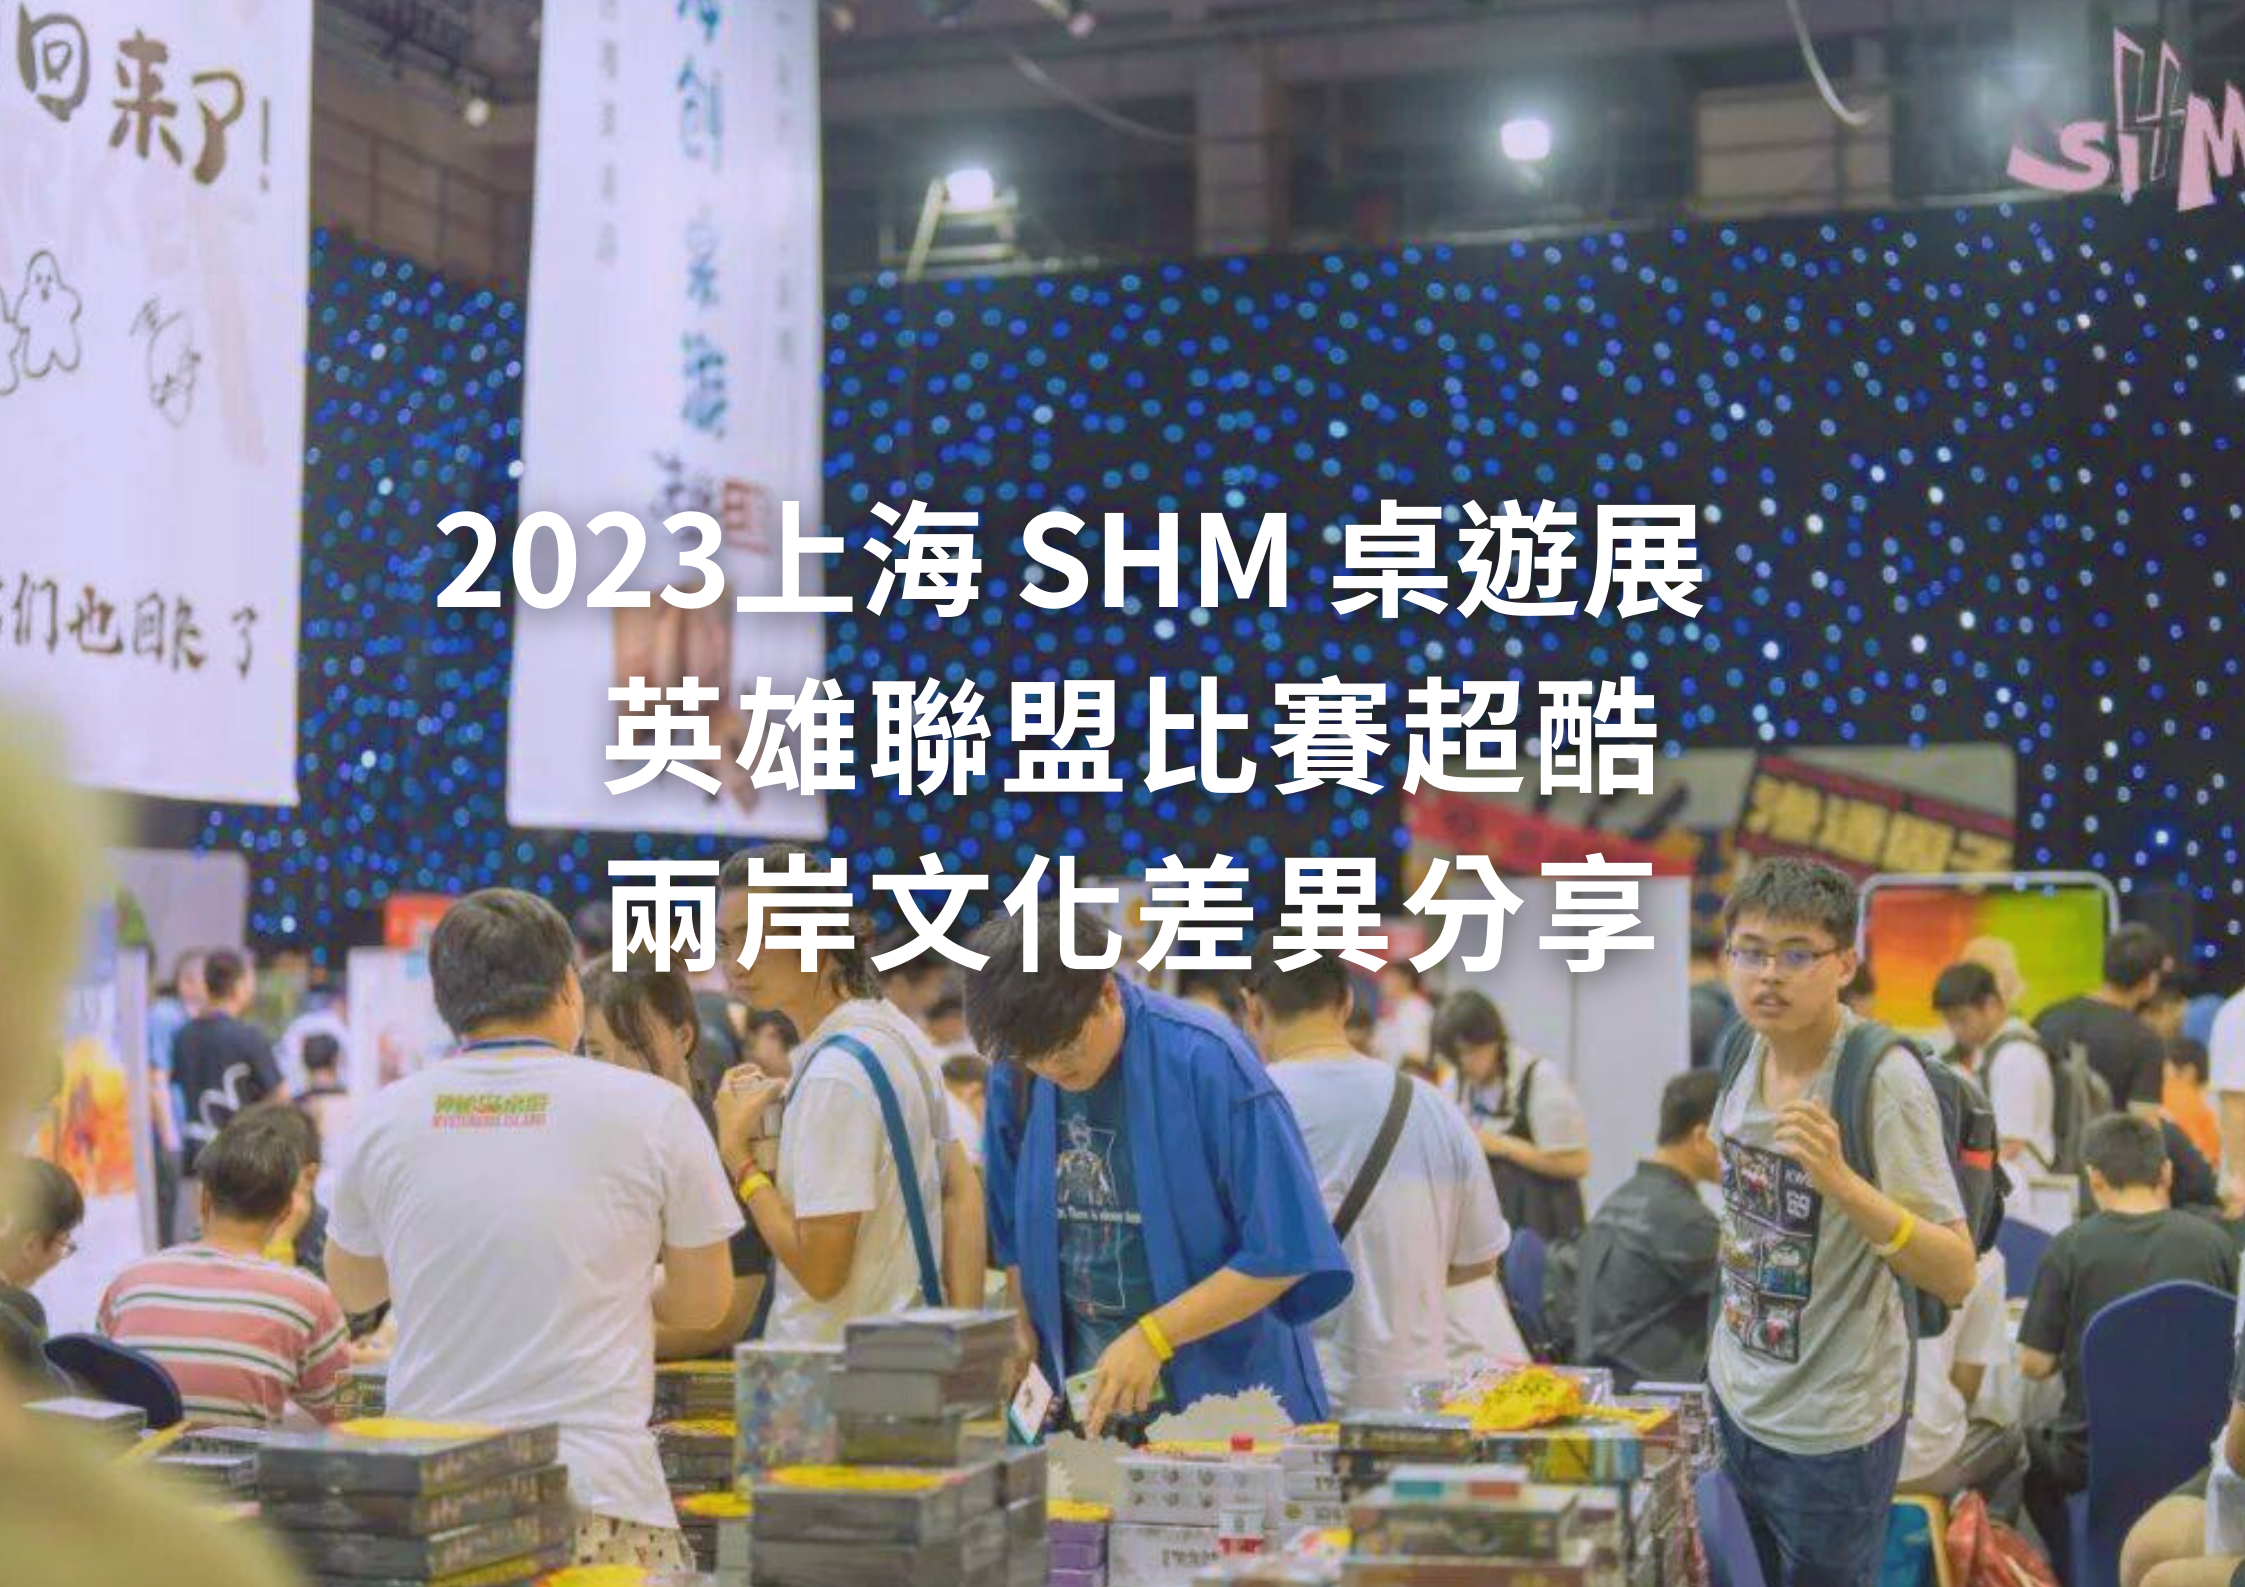 上海SHM桌遊展